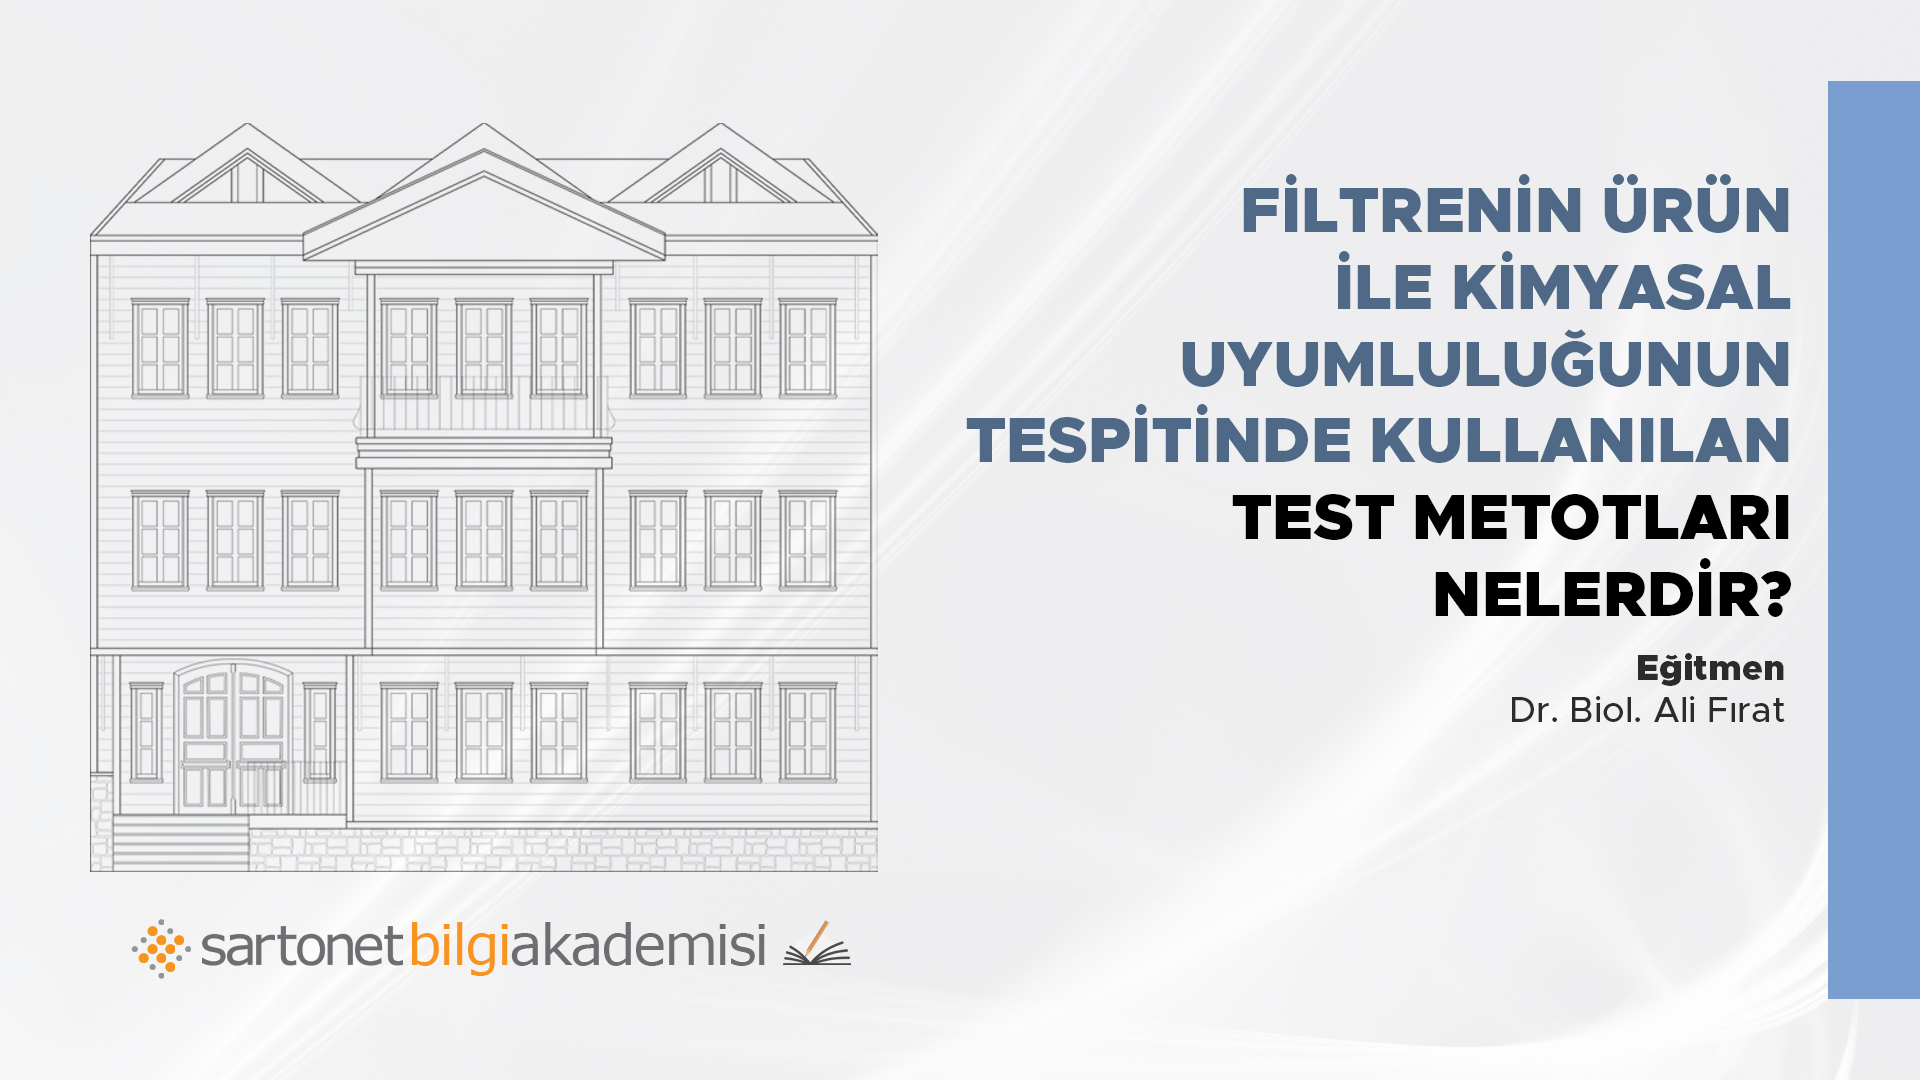 Filtrenin ürün ile kimyasal uyumluluğunun tespitinde kullanılan test metotları nelerdir?